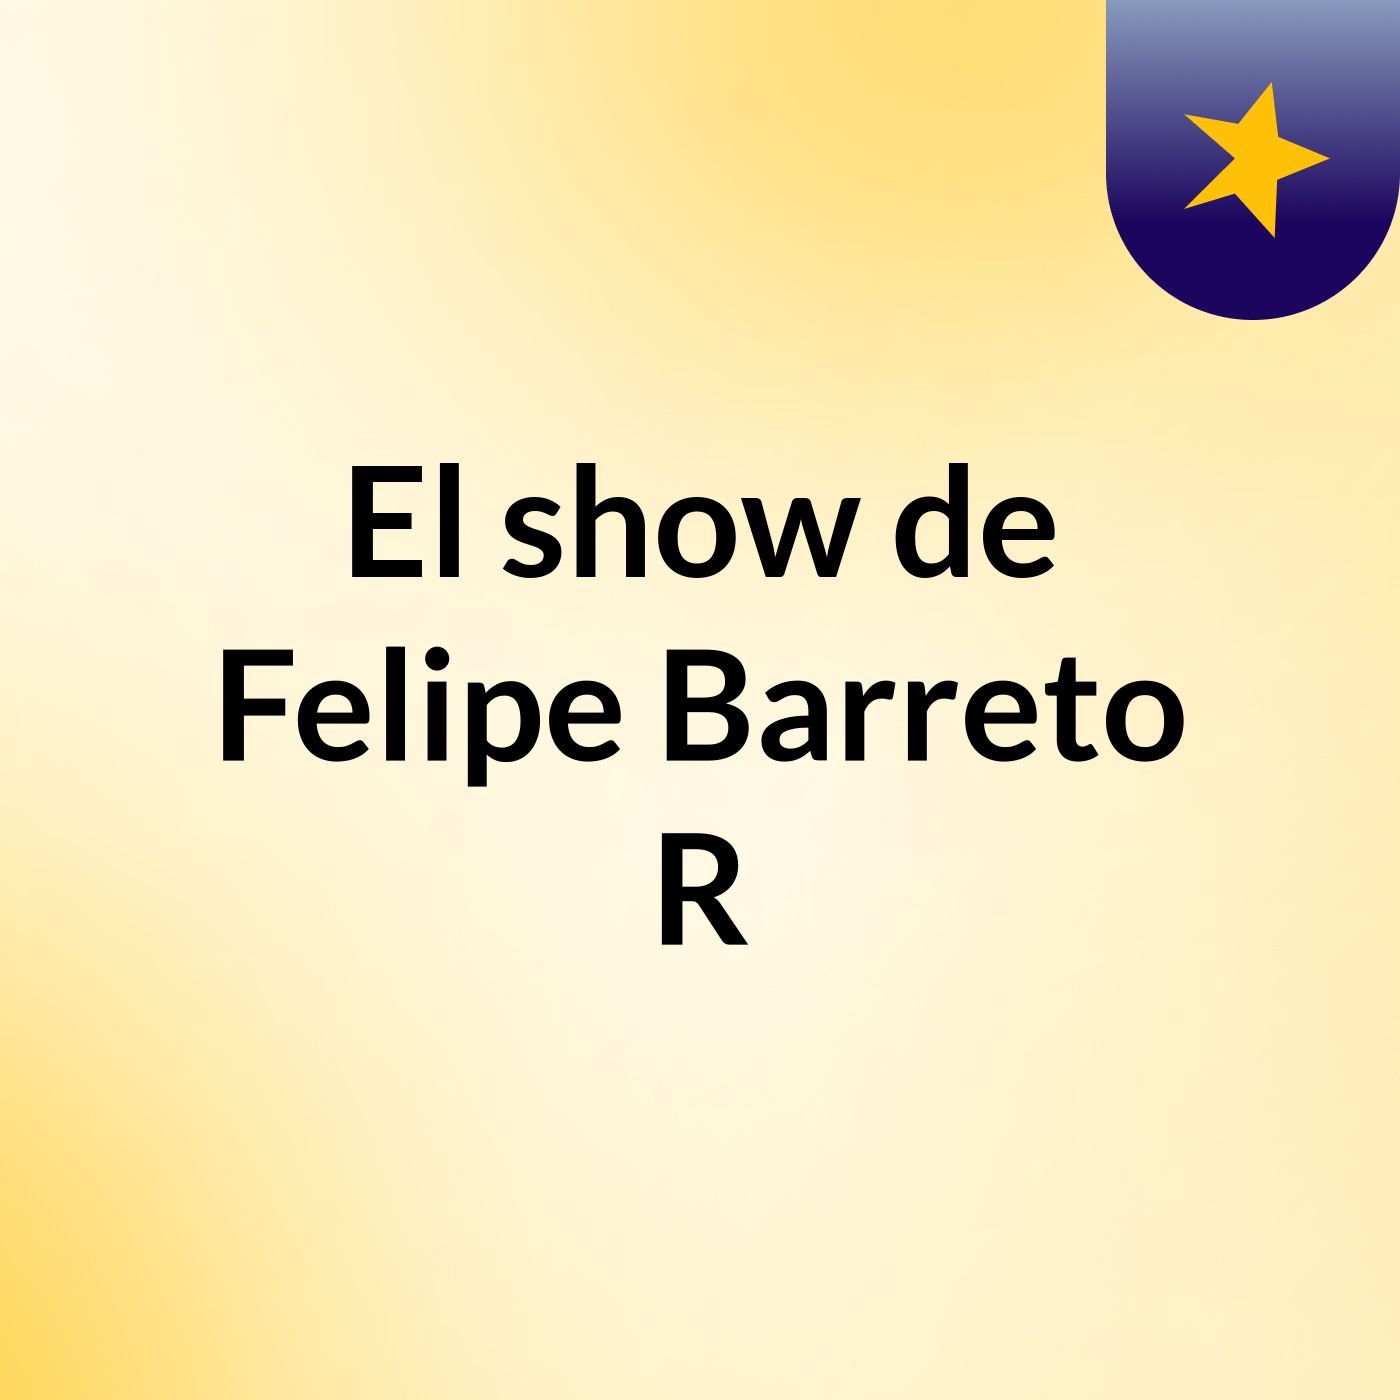 El show de Felipe Barreto R